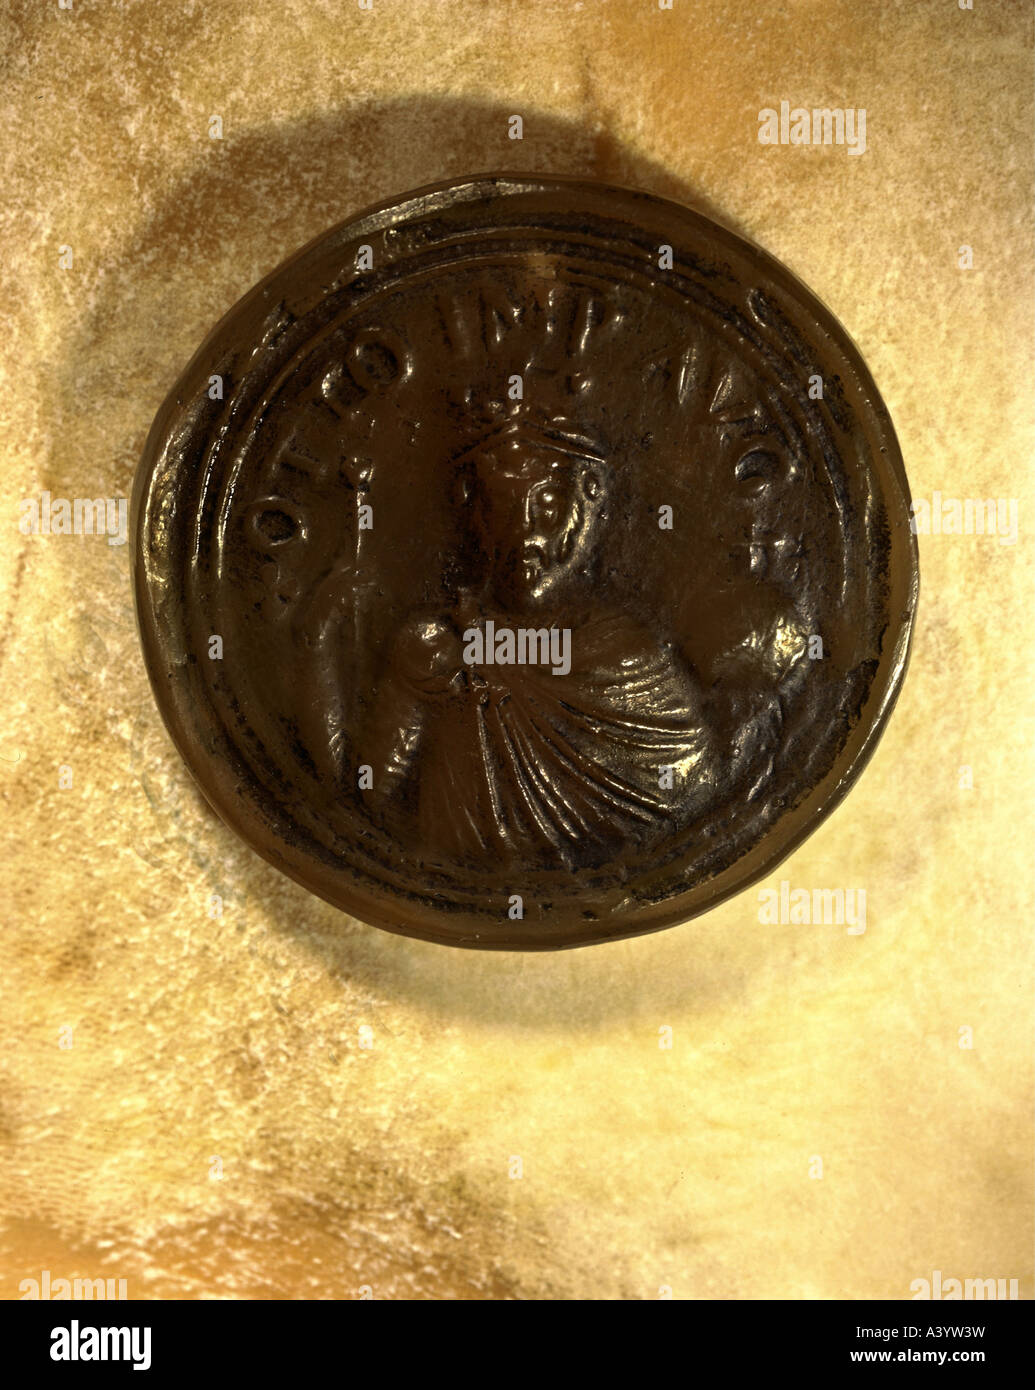 Ottone II, 955 - 7.12.983, Sacro Romano Imperatore 25.12.967 - 7.12.983, ritratto, il terzo sigillo imperiale, ottoniana, re dei tedeschi, Foto Stock